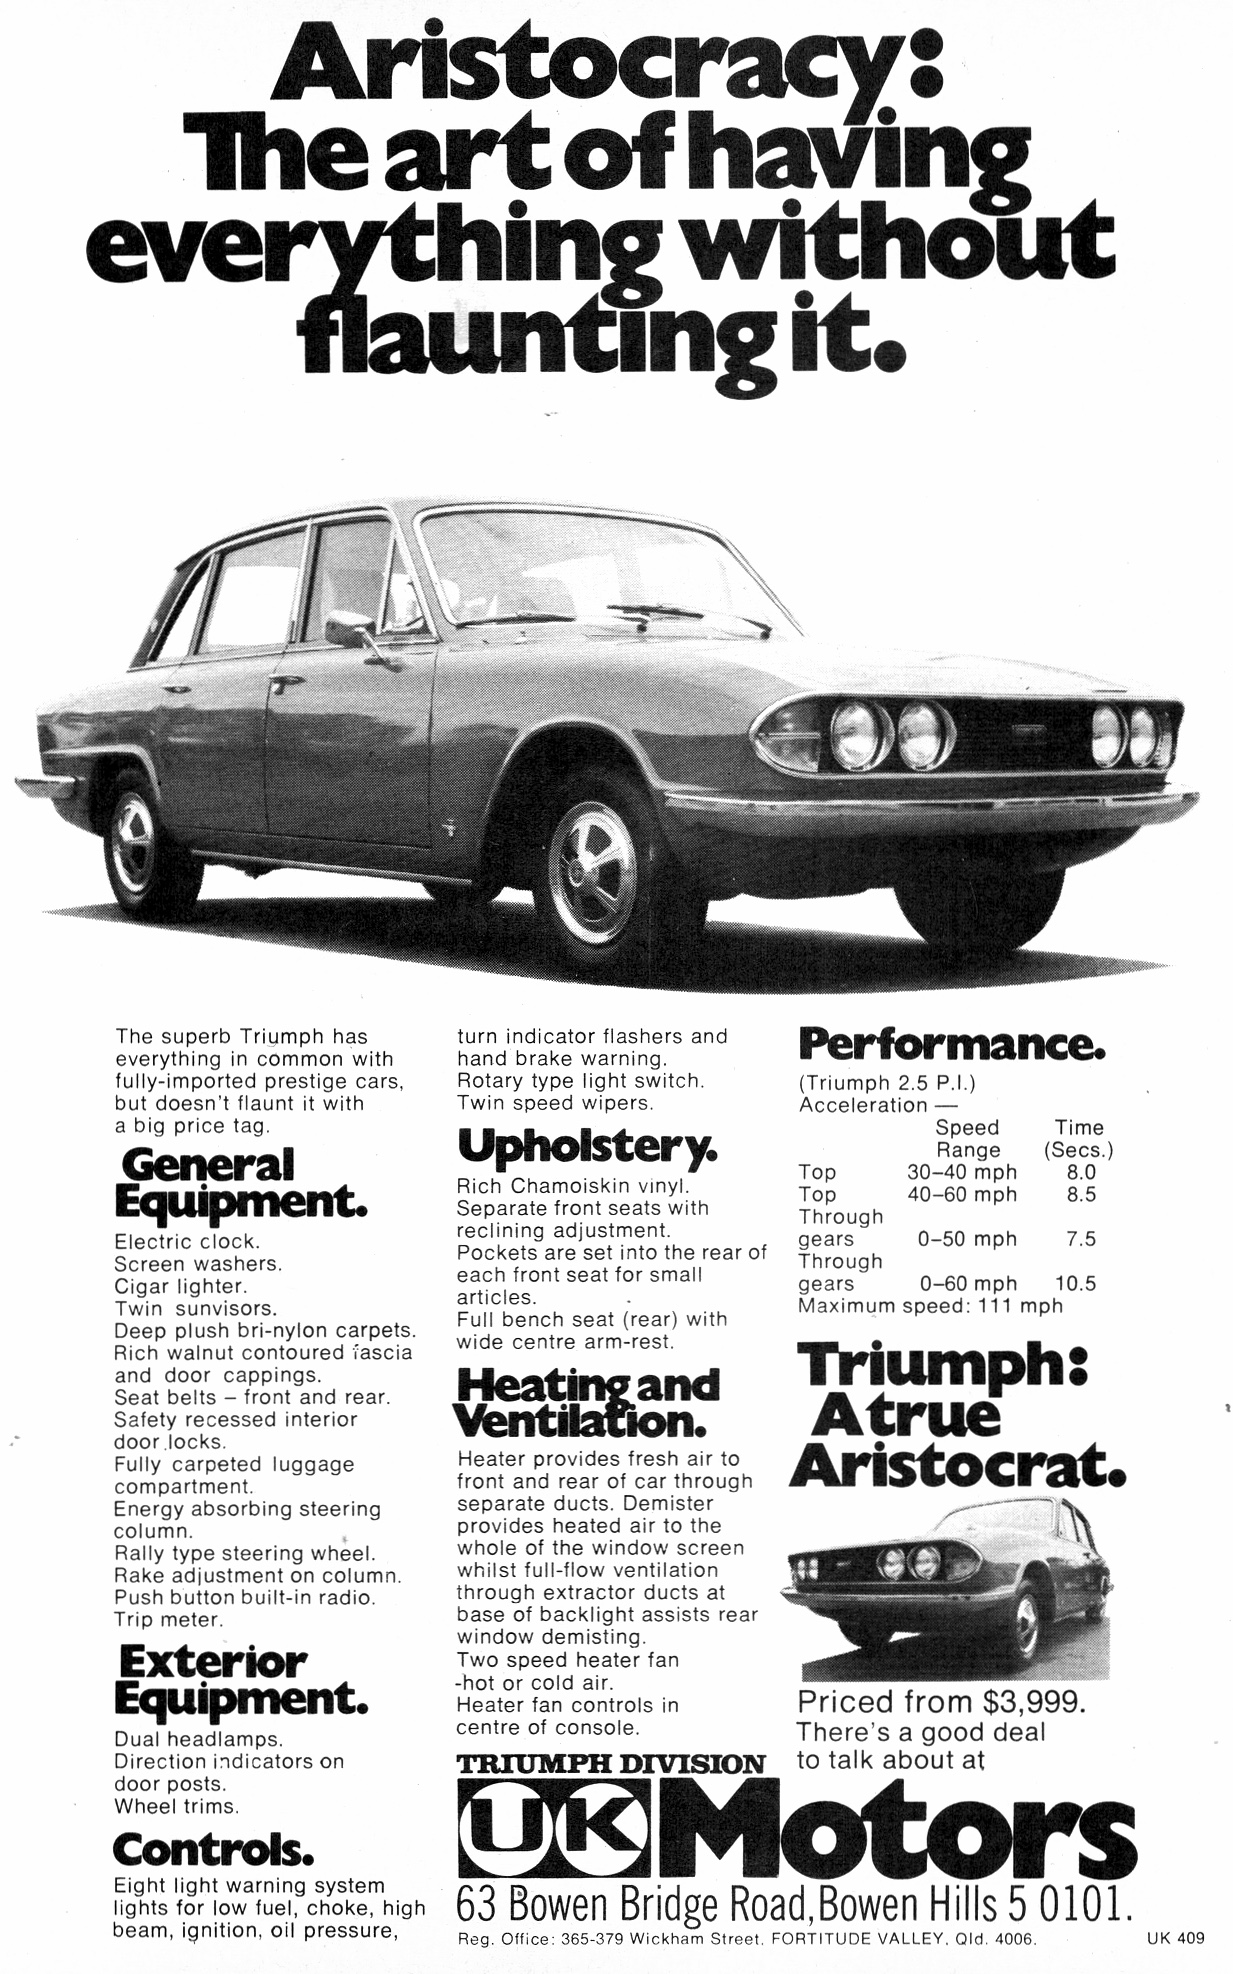 1972 Triumph 2.5 PI UK Motors